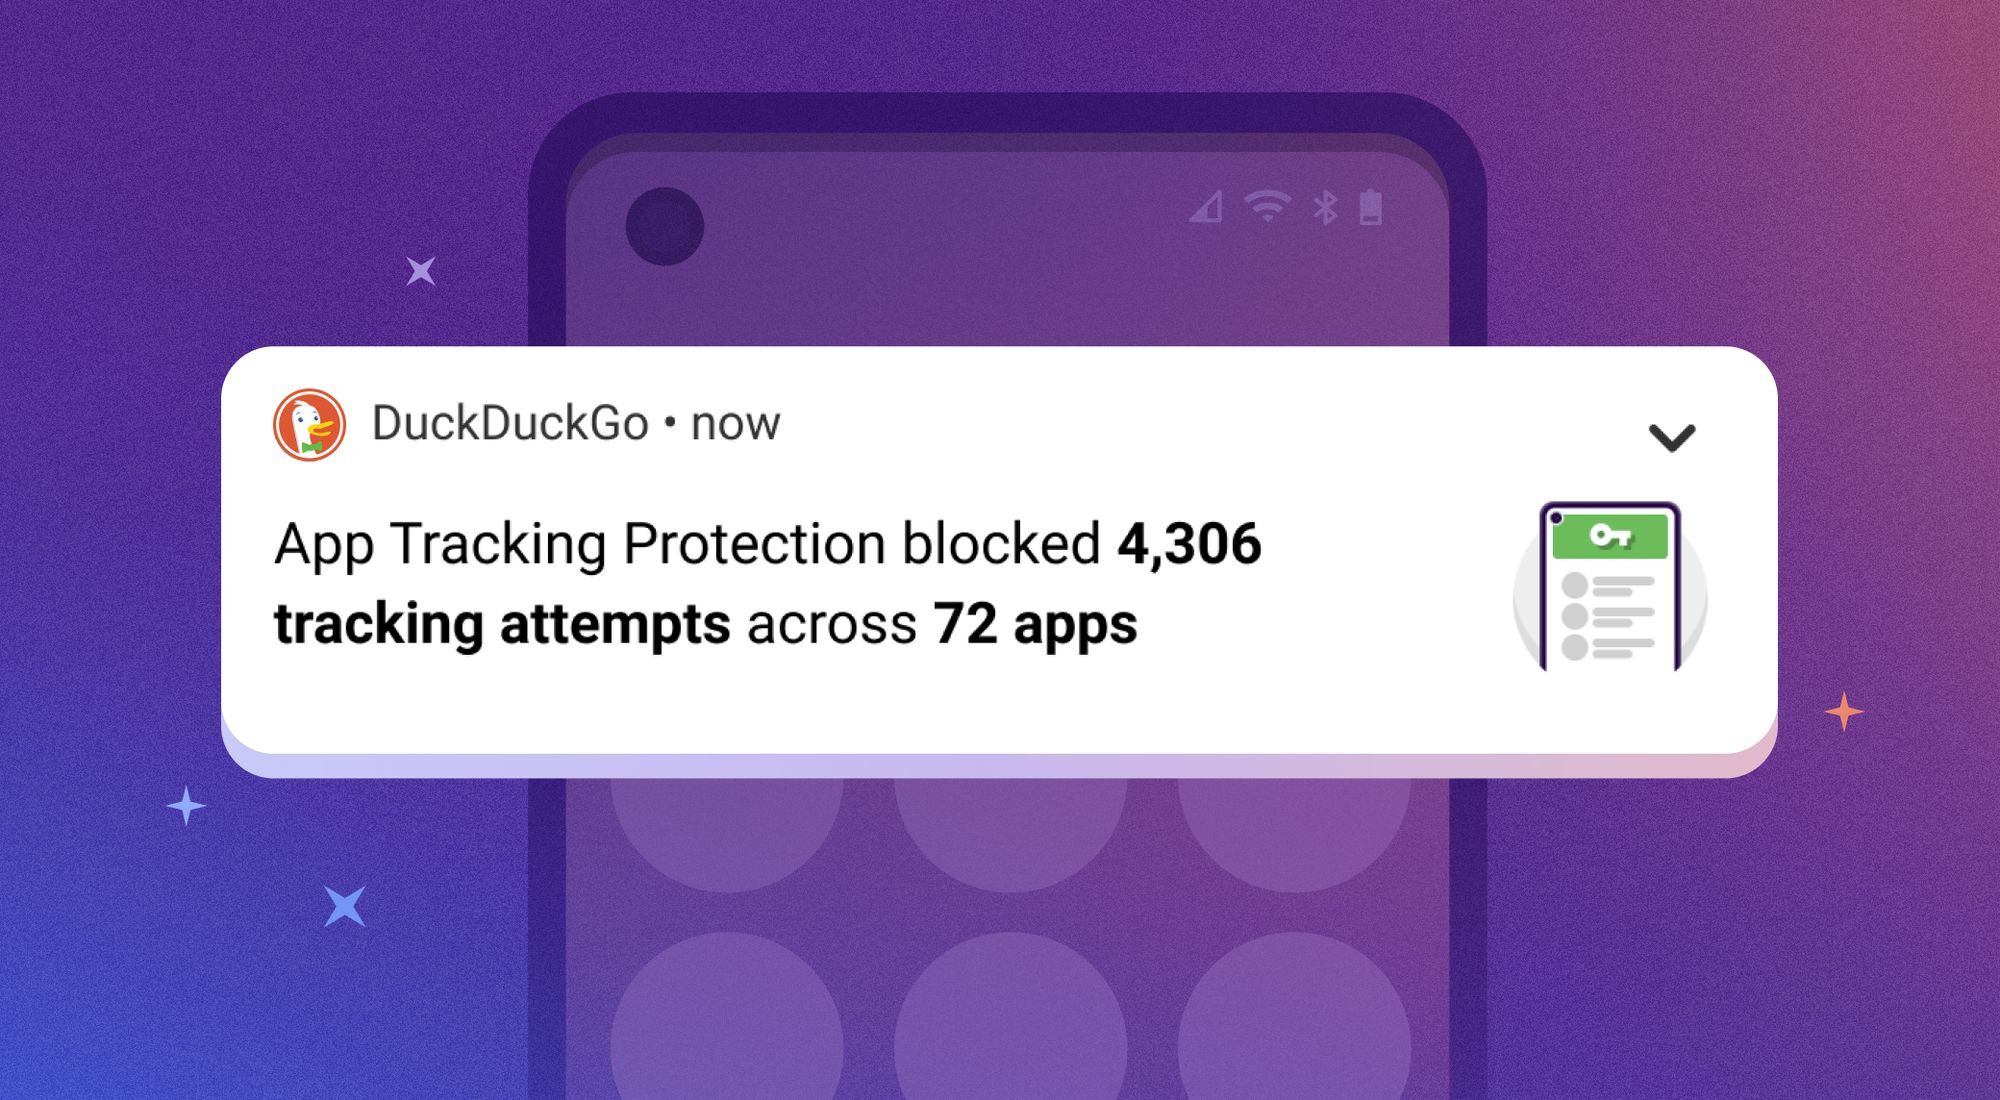     DuckDuckGo     Android